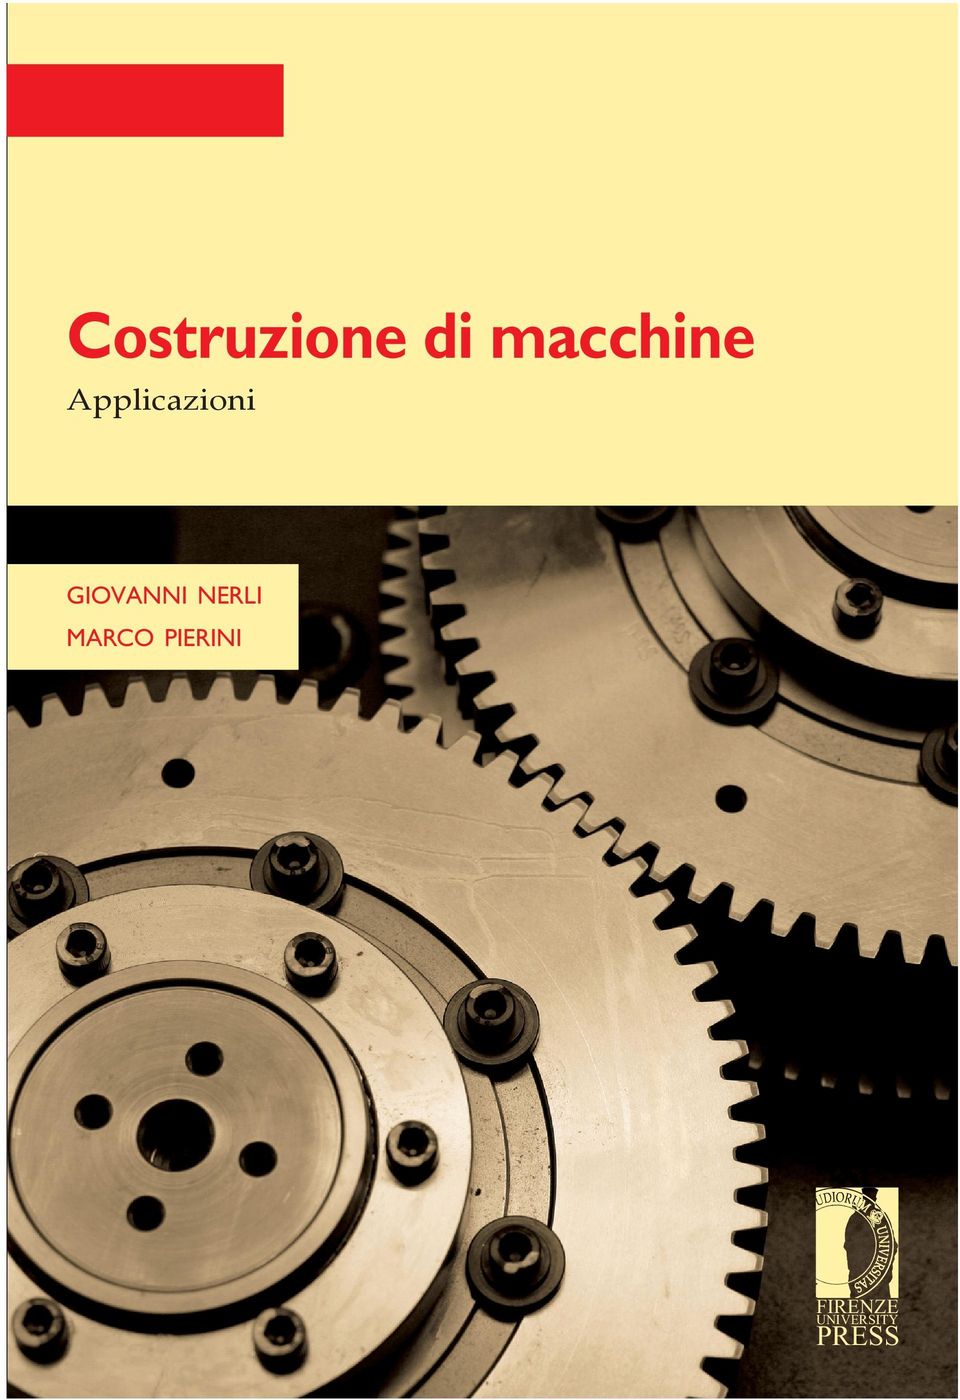 Marco Pierini, è professore associato di Progettazione meccanica e Costruzione di macchine presso la Facoltà di Ingegneria dell Università di Firenze dal 2002.